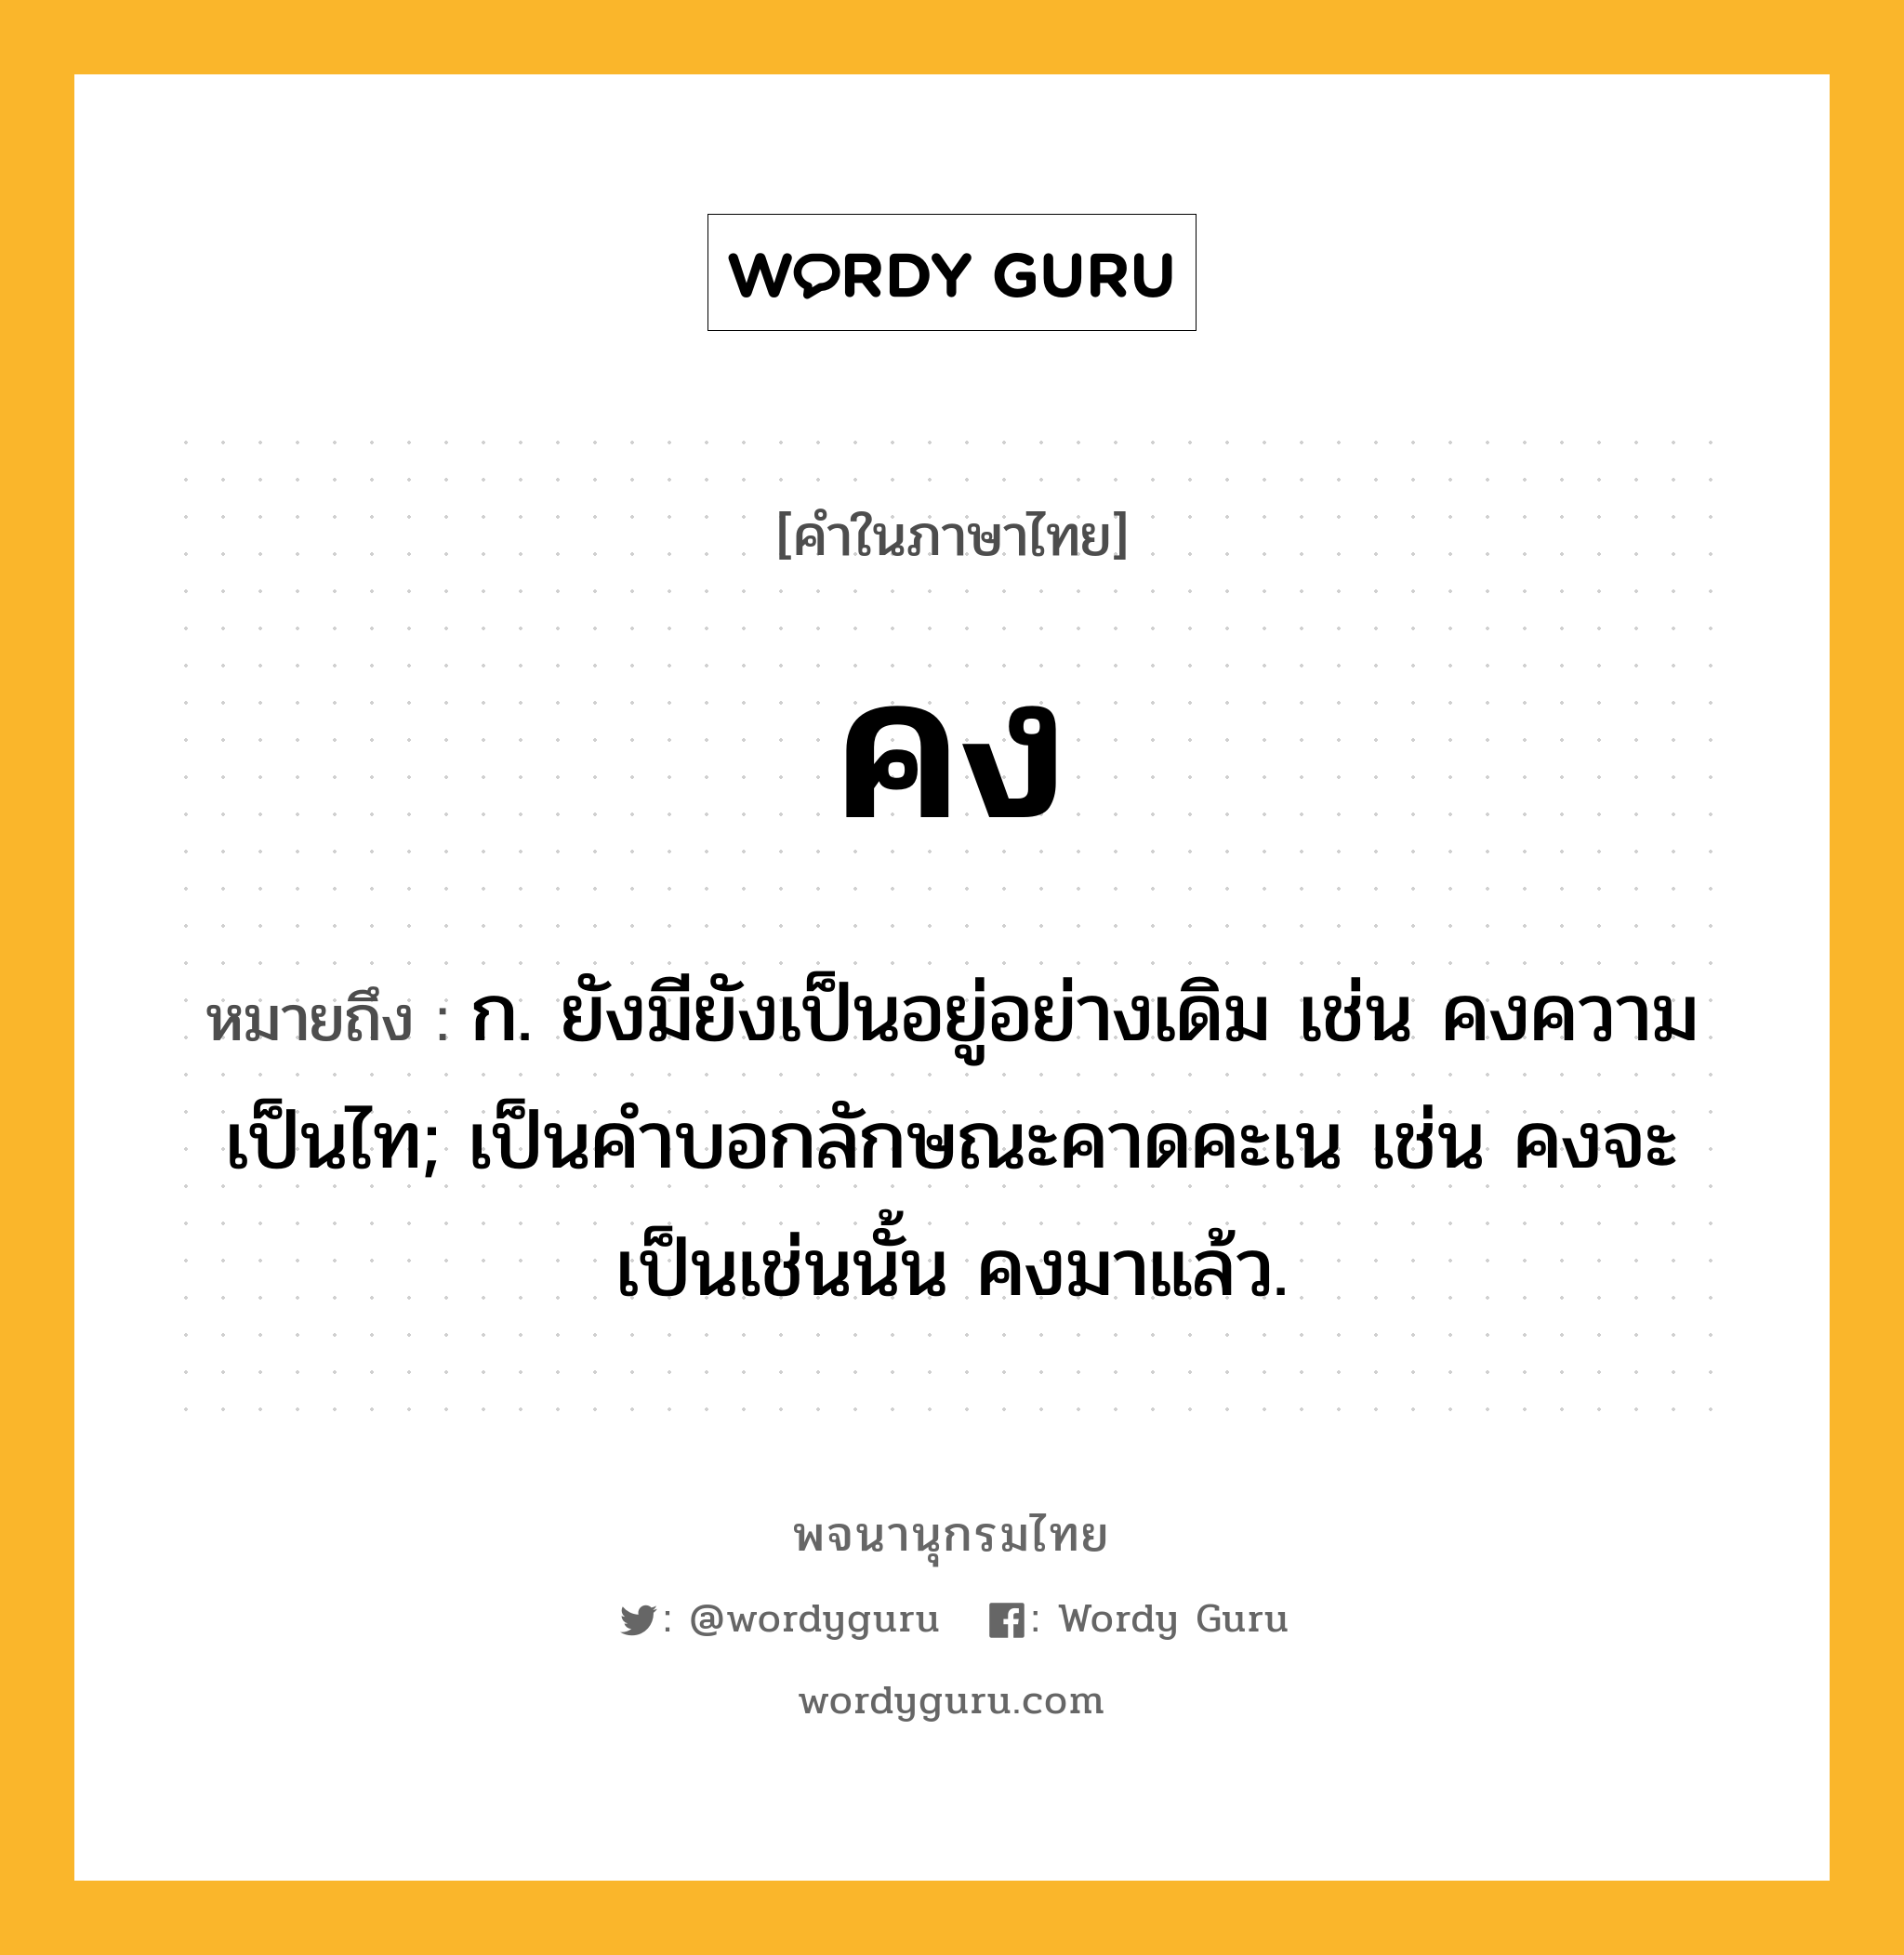 คง ความหมาย หมายถึงอะไร?, คำในภาษาไทย คง หมายถึง ก. ยังมียังเป็นอยู่อย่างเดิม เช่น คงความเป็นไท; เป็นคำบอกลักษณะคาดคะเน เช่น คงจะเป็นเช่นนั้น คงมาแล้ว.